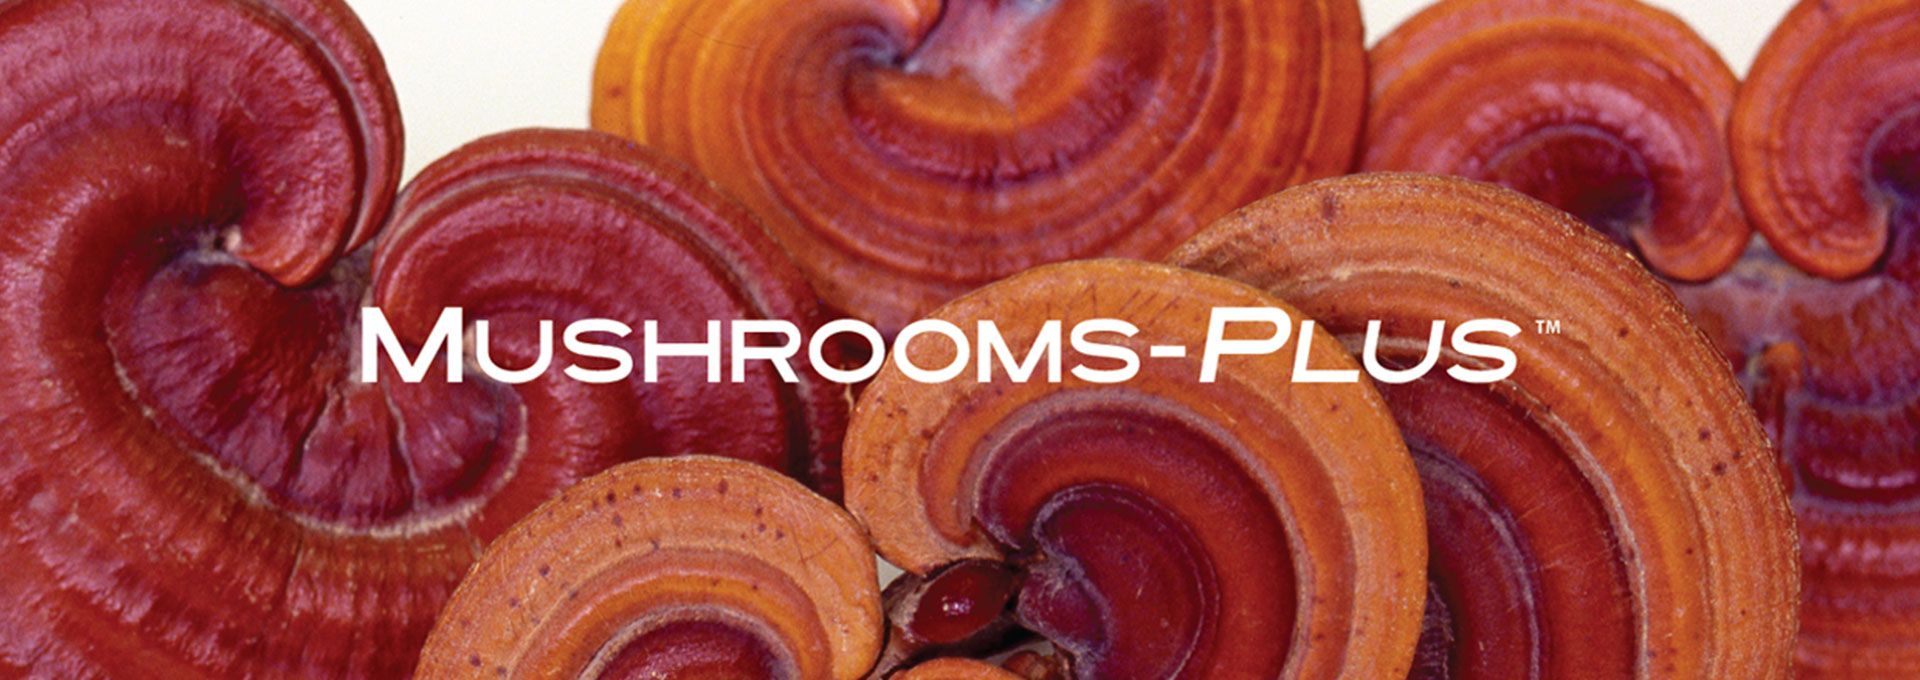 Mushrooms-Plus Banner